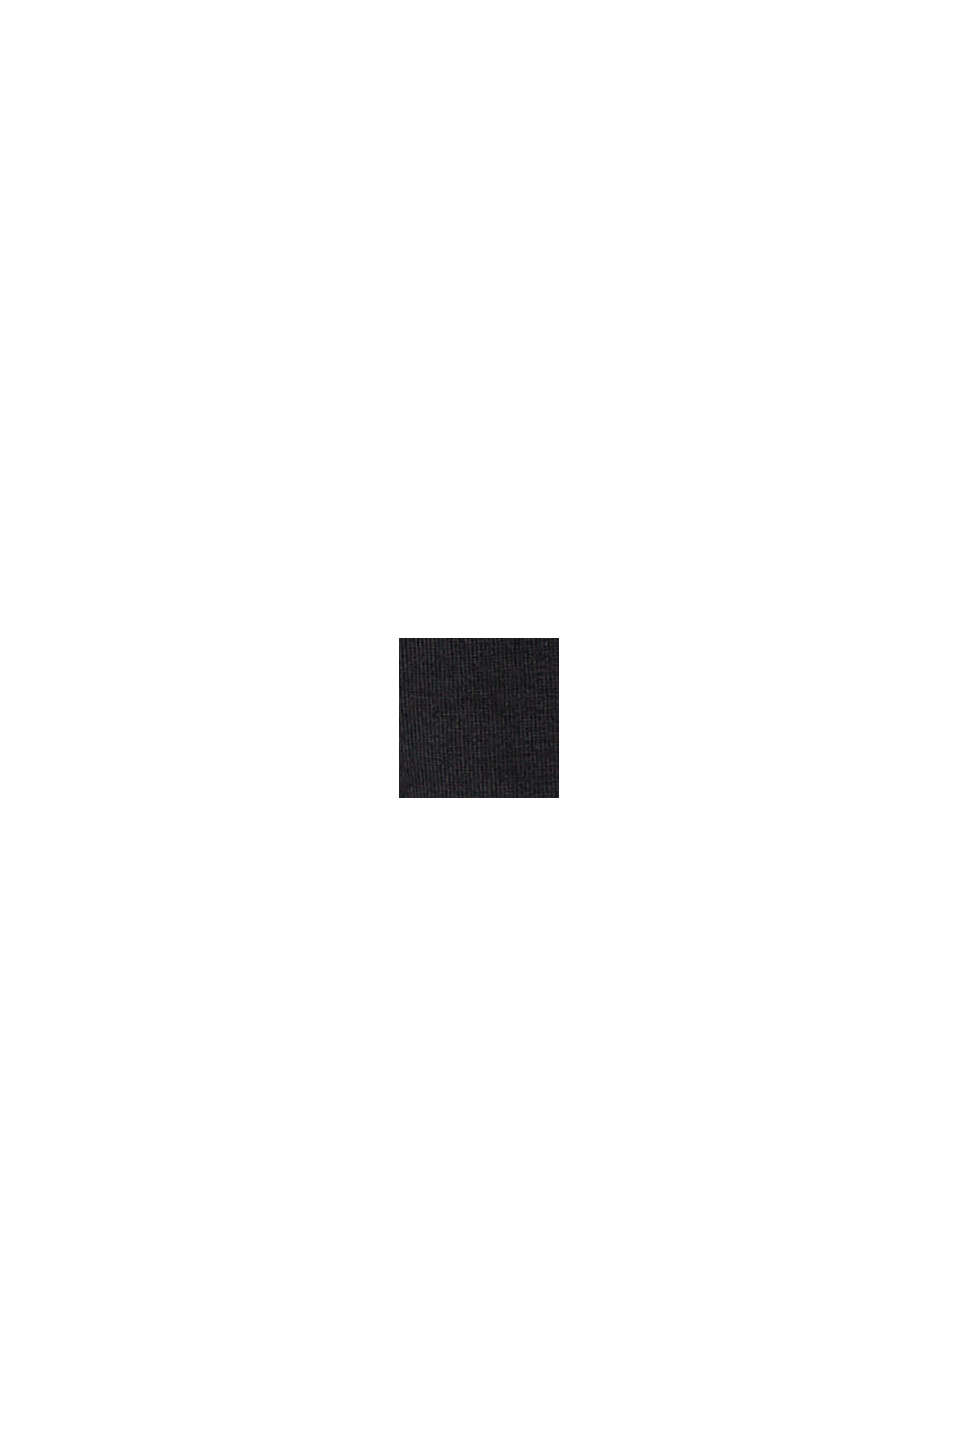 Spódnica mini z kompaktowej dzianiny dresowej, BLACK, swatch